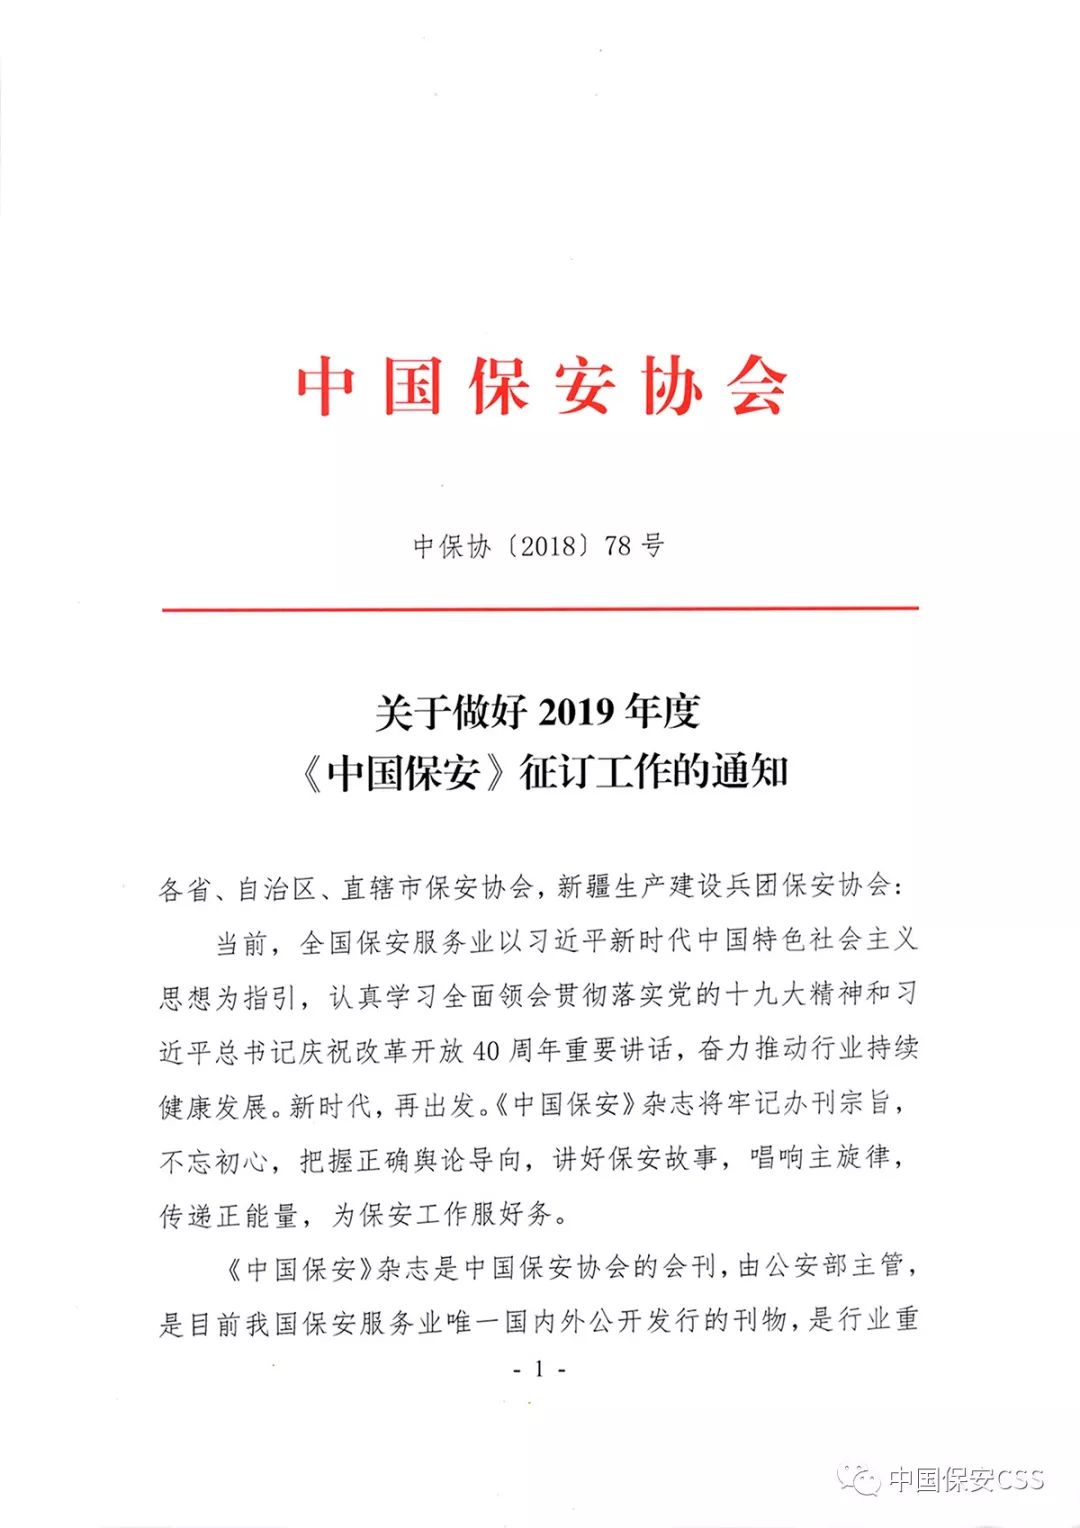 关于转发中国保安协会《关于做好2019年度〈中国保安〉征订工作的通知》的通知